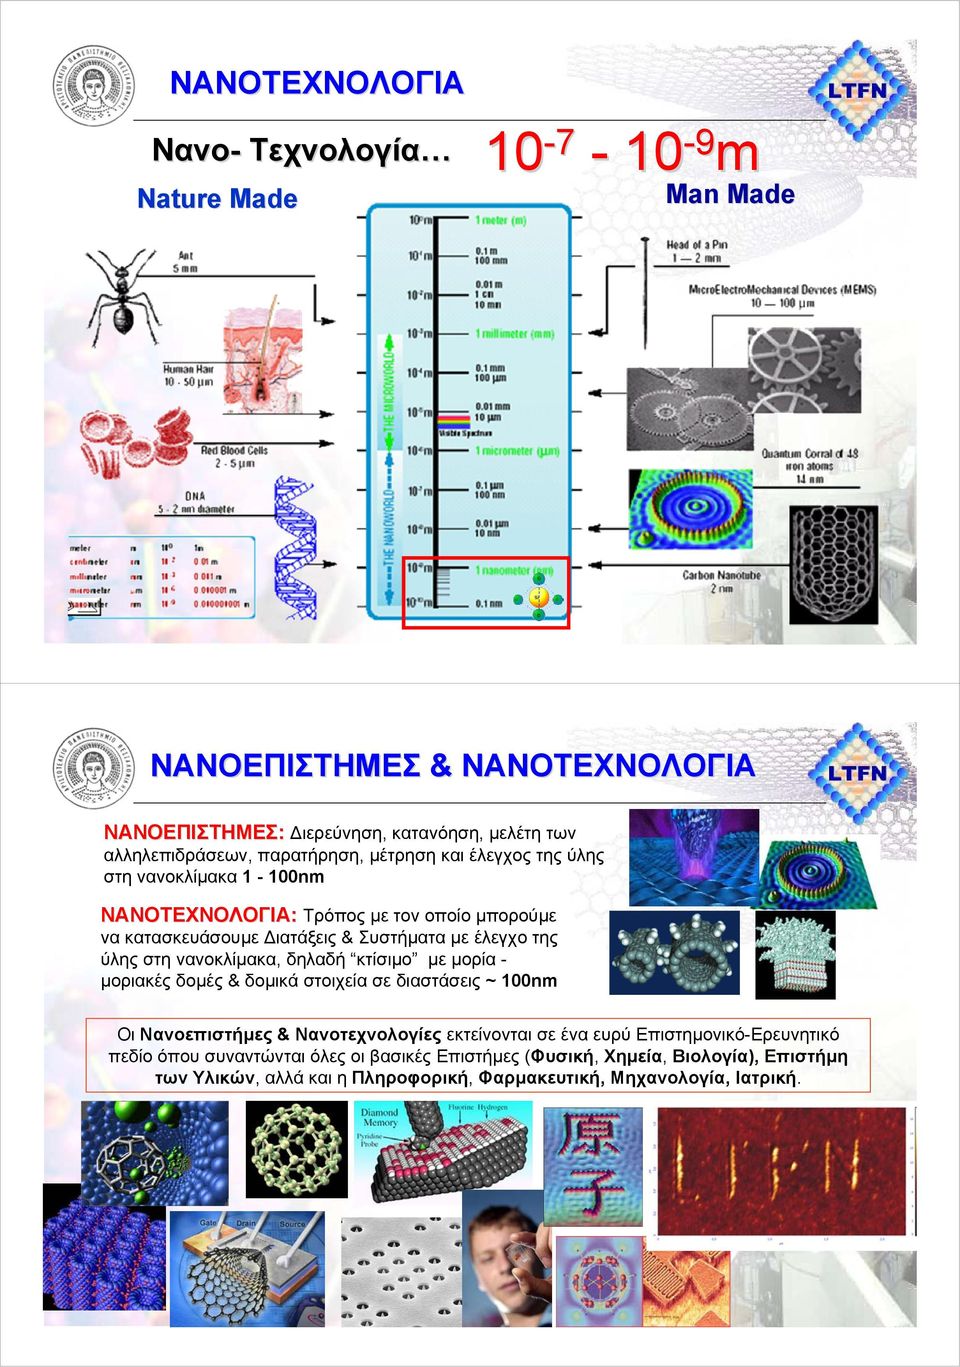 Συστήµατα µε έλεγχο της ύλης στη νανοκλίµακα, δηλαδή κτίσιµο µε µορία µοριακές δοµές & δοµικά στοιχεία σε διαστάσεις ~ 100nm Οι Νανοεπιστήµες & Νανοτεχνολογίες εκτείνονται